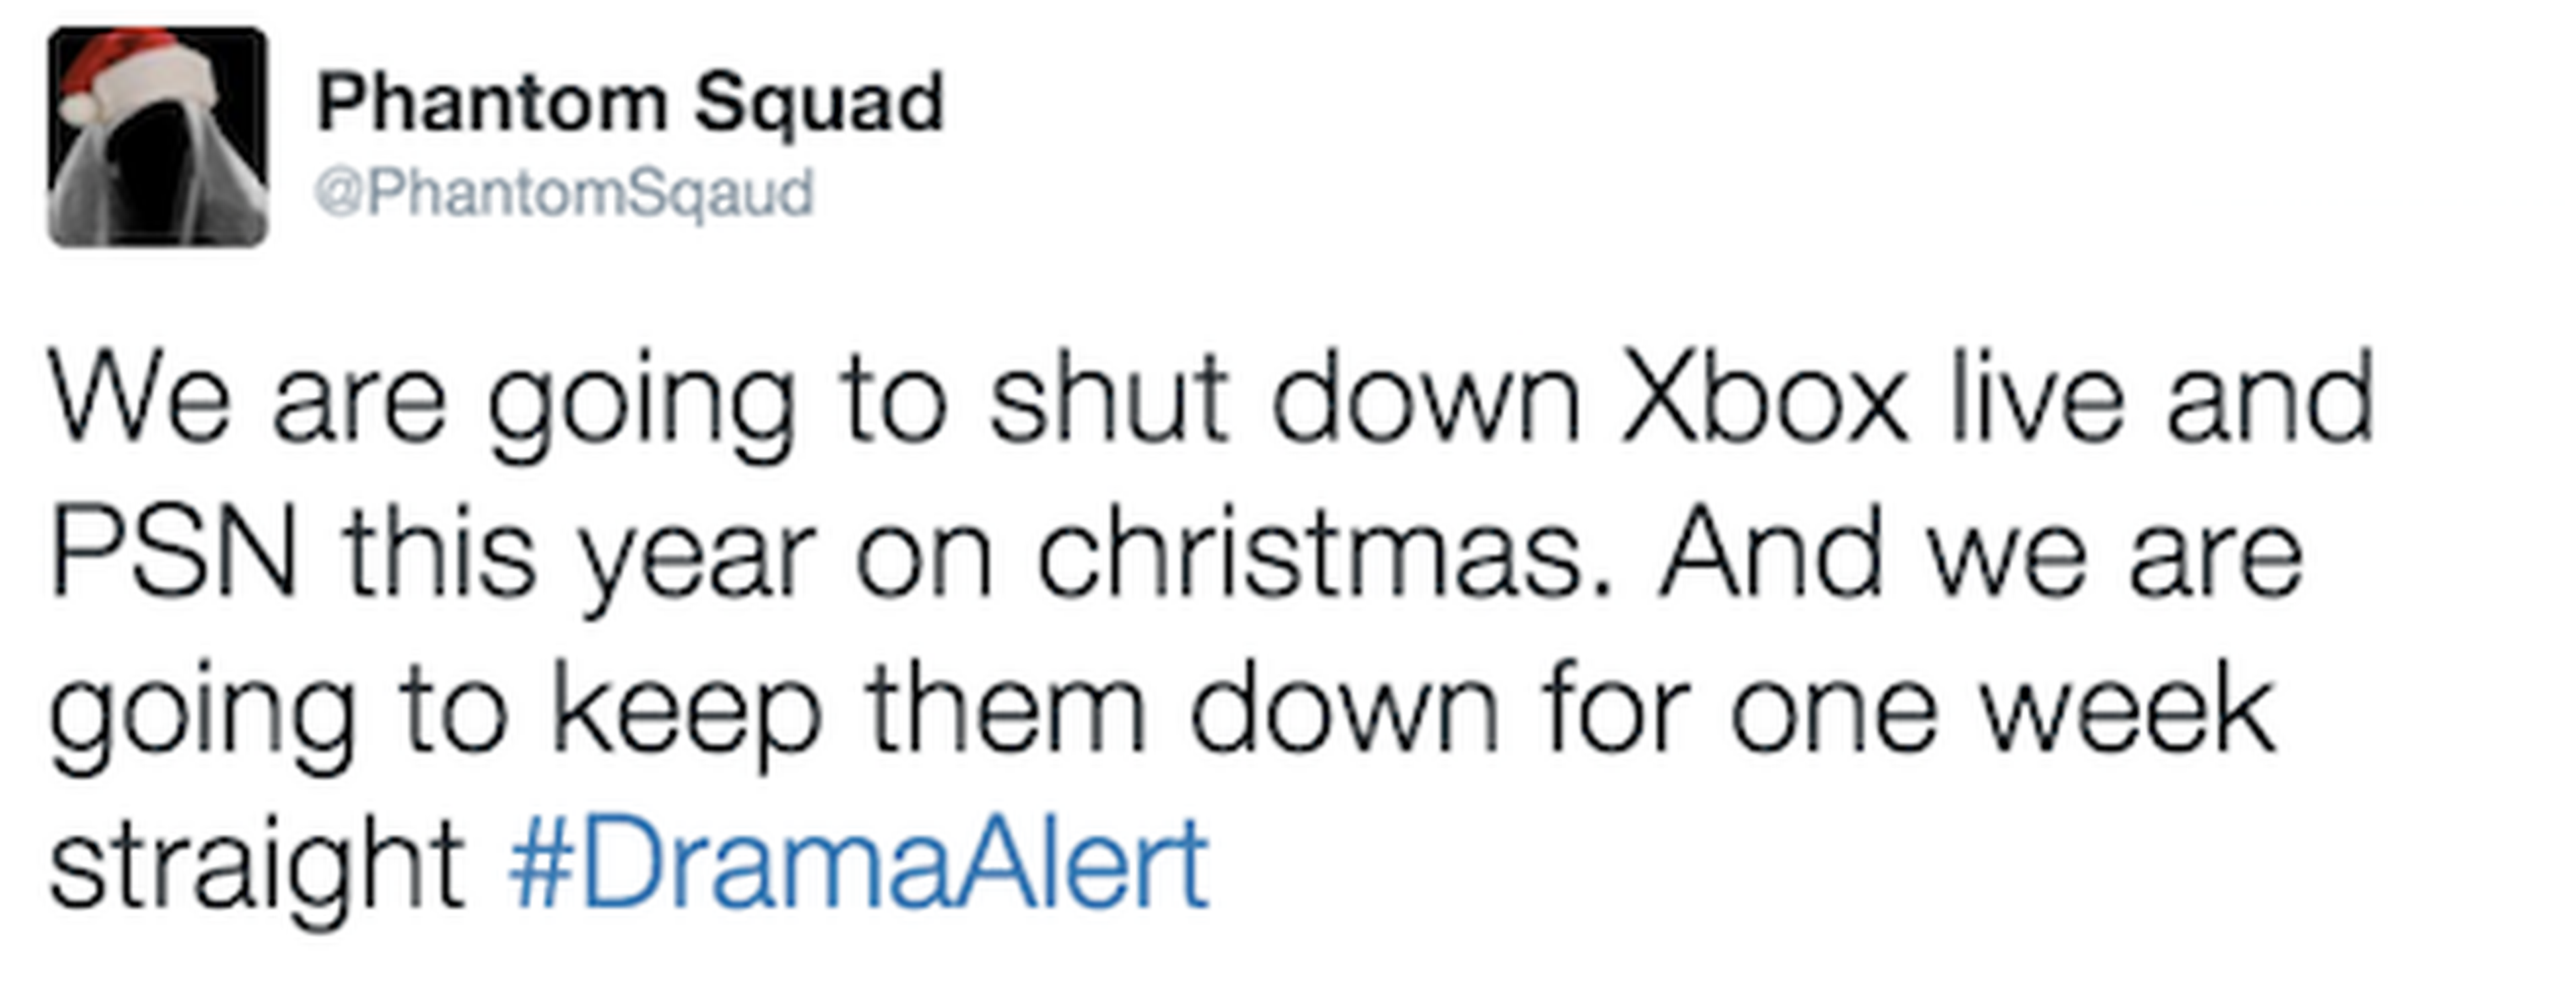 PSN y XBox Live podrían volver a ser hackeados en Navidad